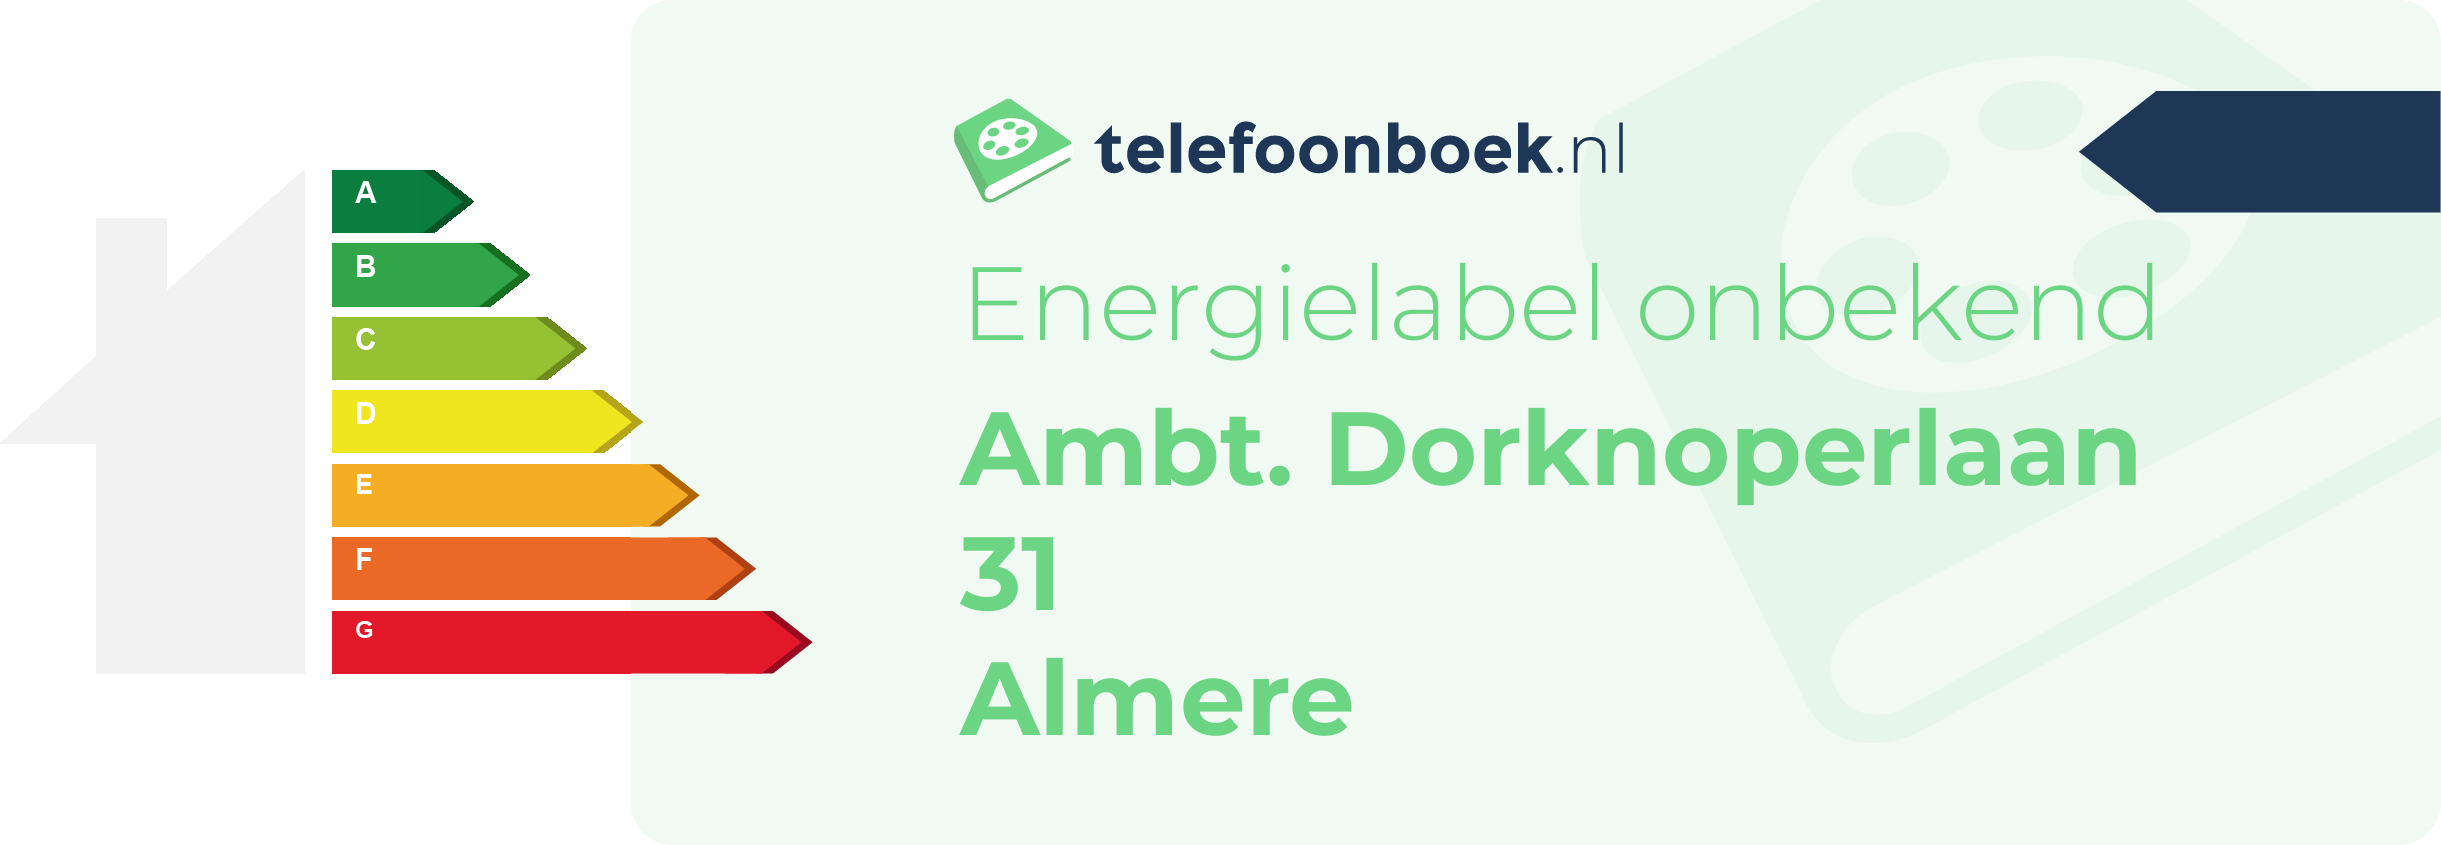 Energielabel Ambt. Dorknoperlaan 31 Almere